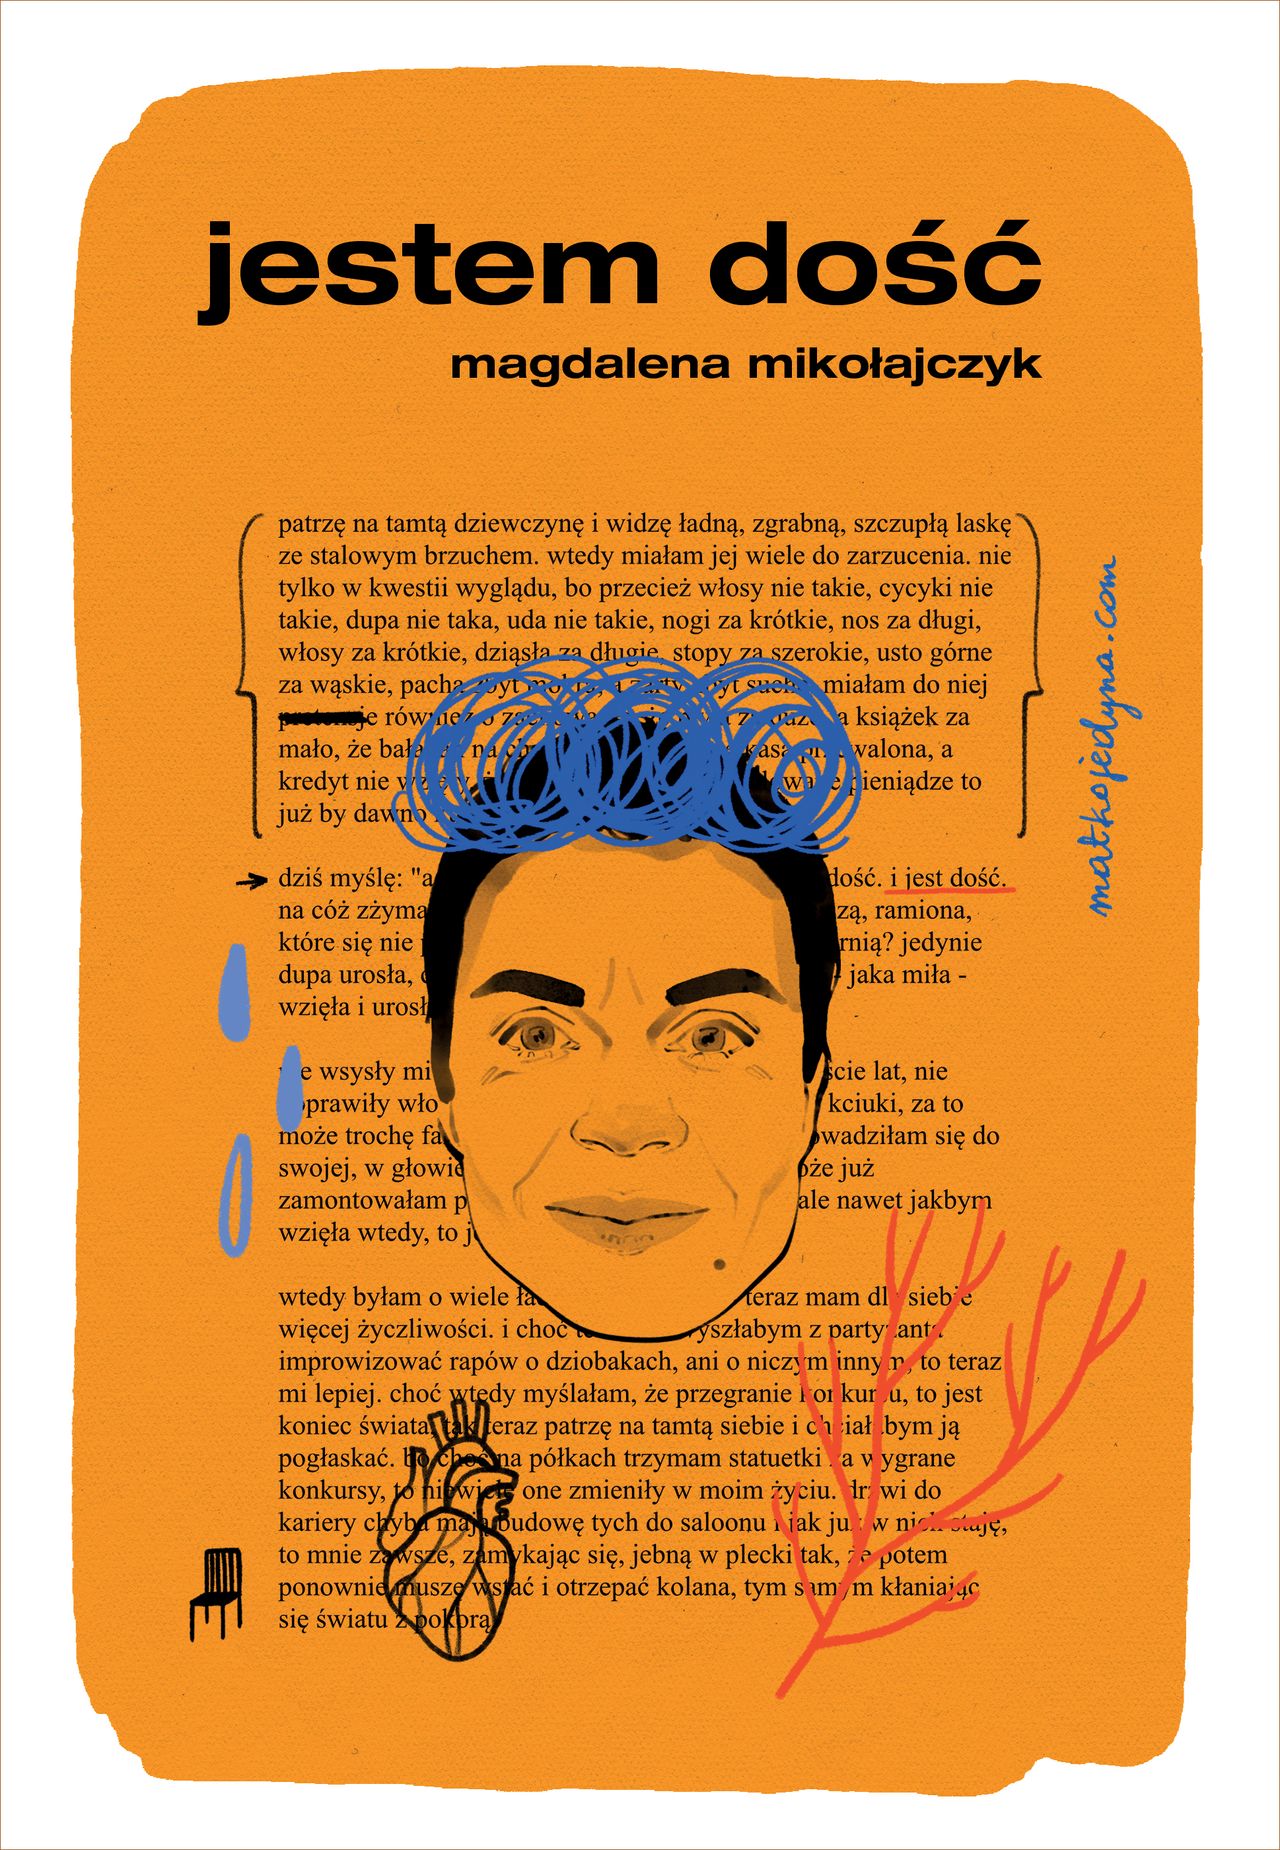 Magdalena Mikołajczyk, "Jestem dość" (2022)